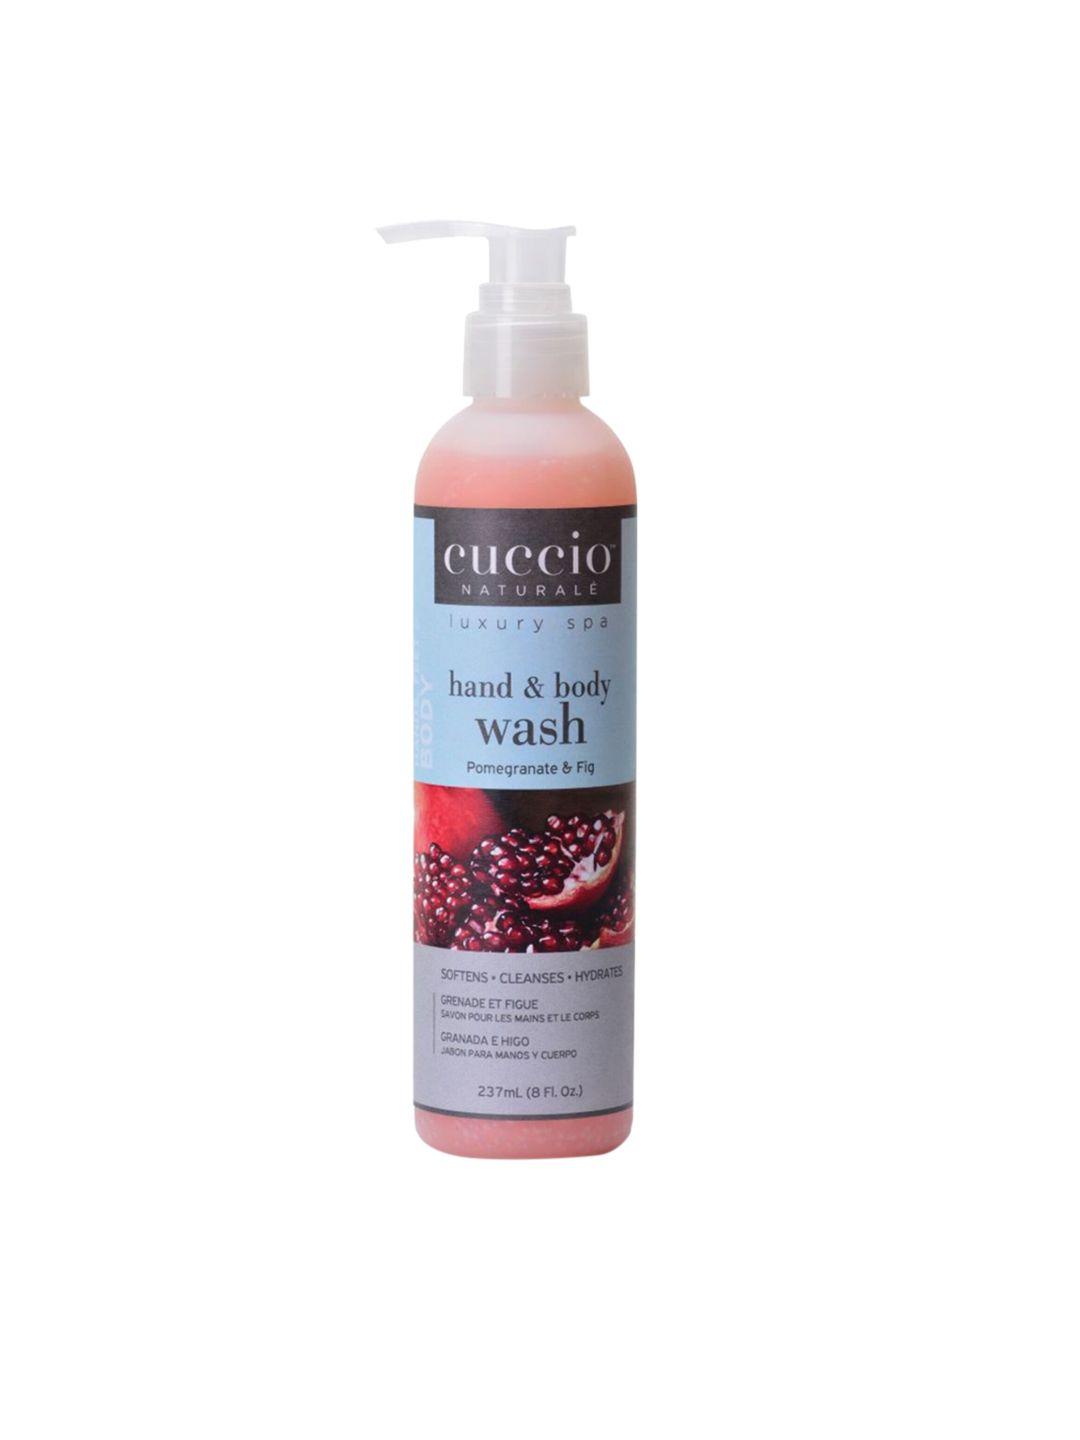 cuccio luxury spa hand & body wash -  pomegranate & fig  non-oily anti-ageing 237ml